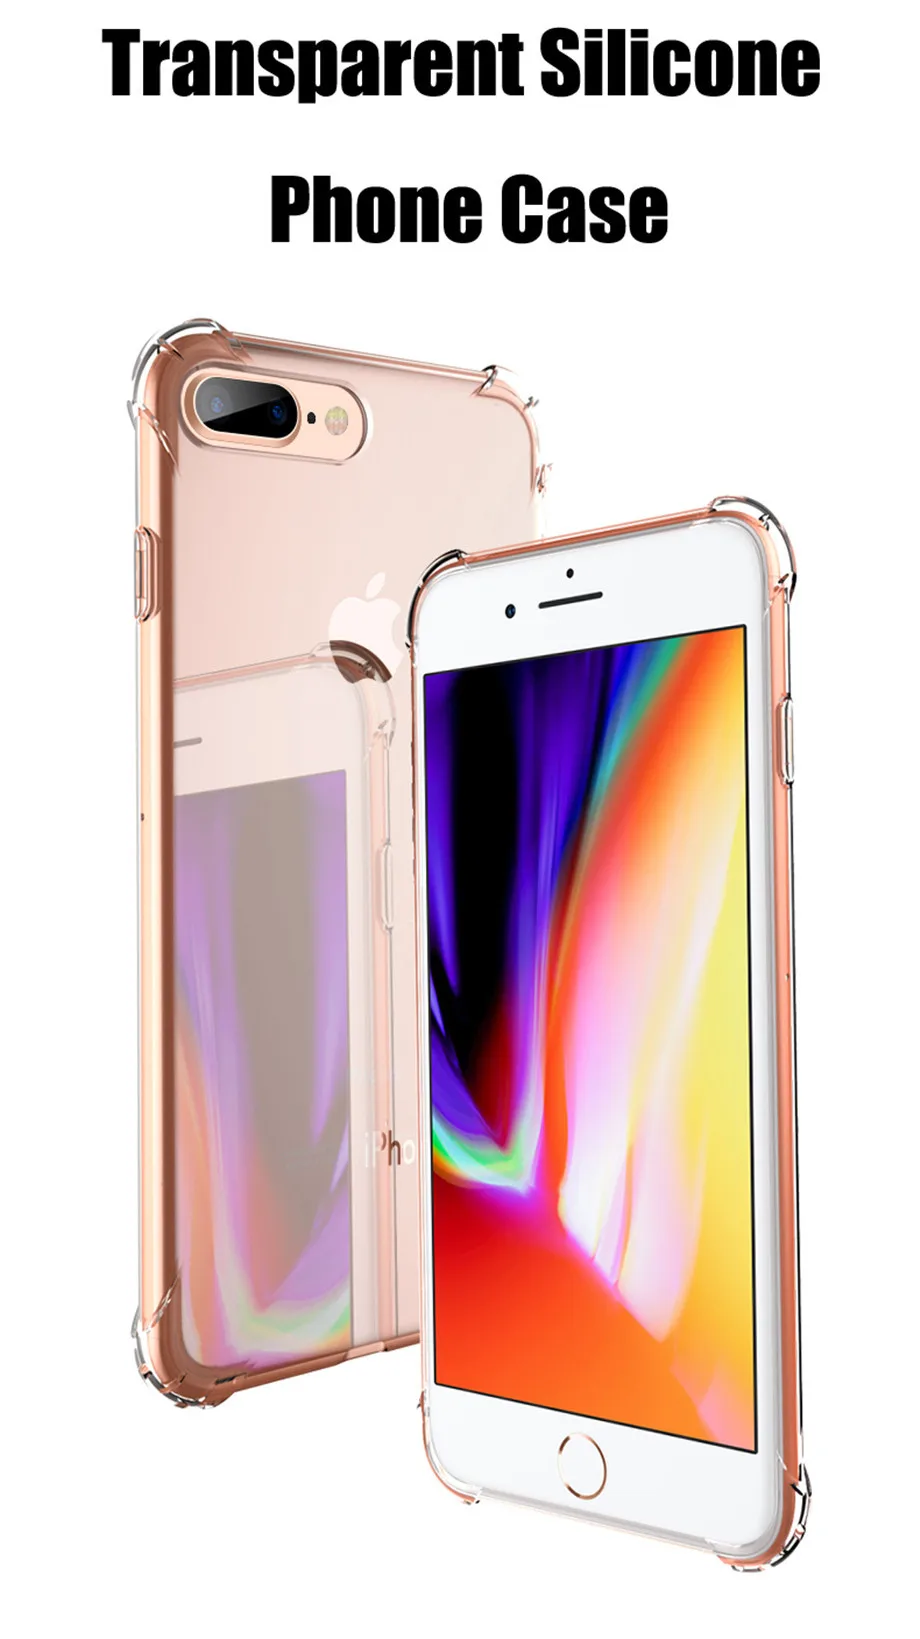 Роскошный силиконовый чехол для телефона для iPhone 6 6s Plus 5 5S прозрачный противоударный защитный чехол для i чехол для телефона 7 8 Plus X